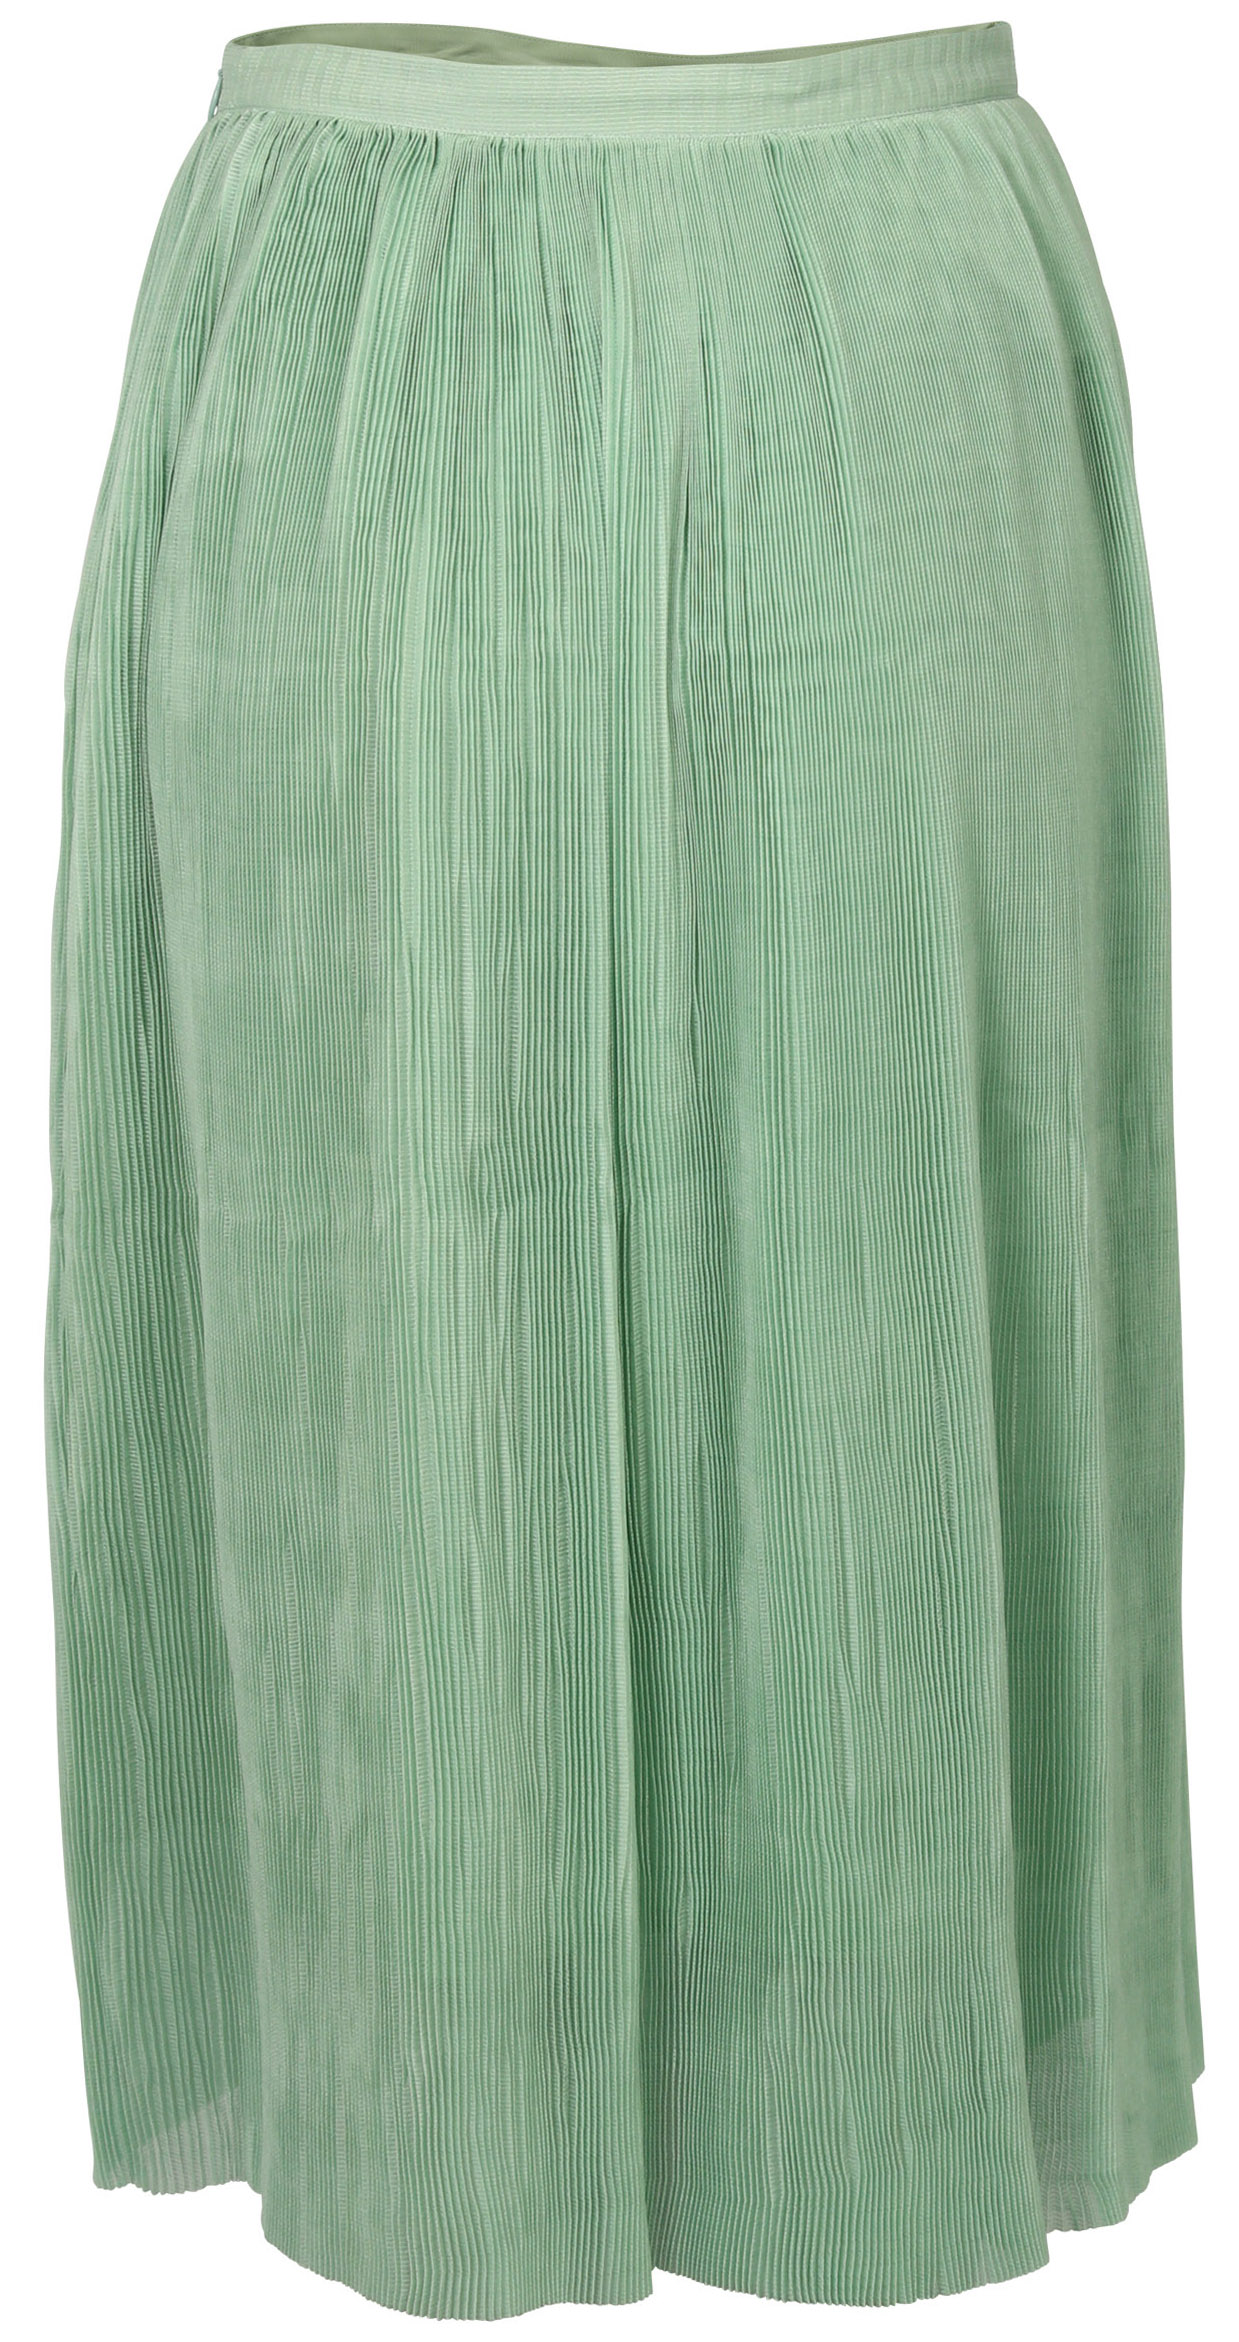 FWSS Skirt Thi Jade Green L